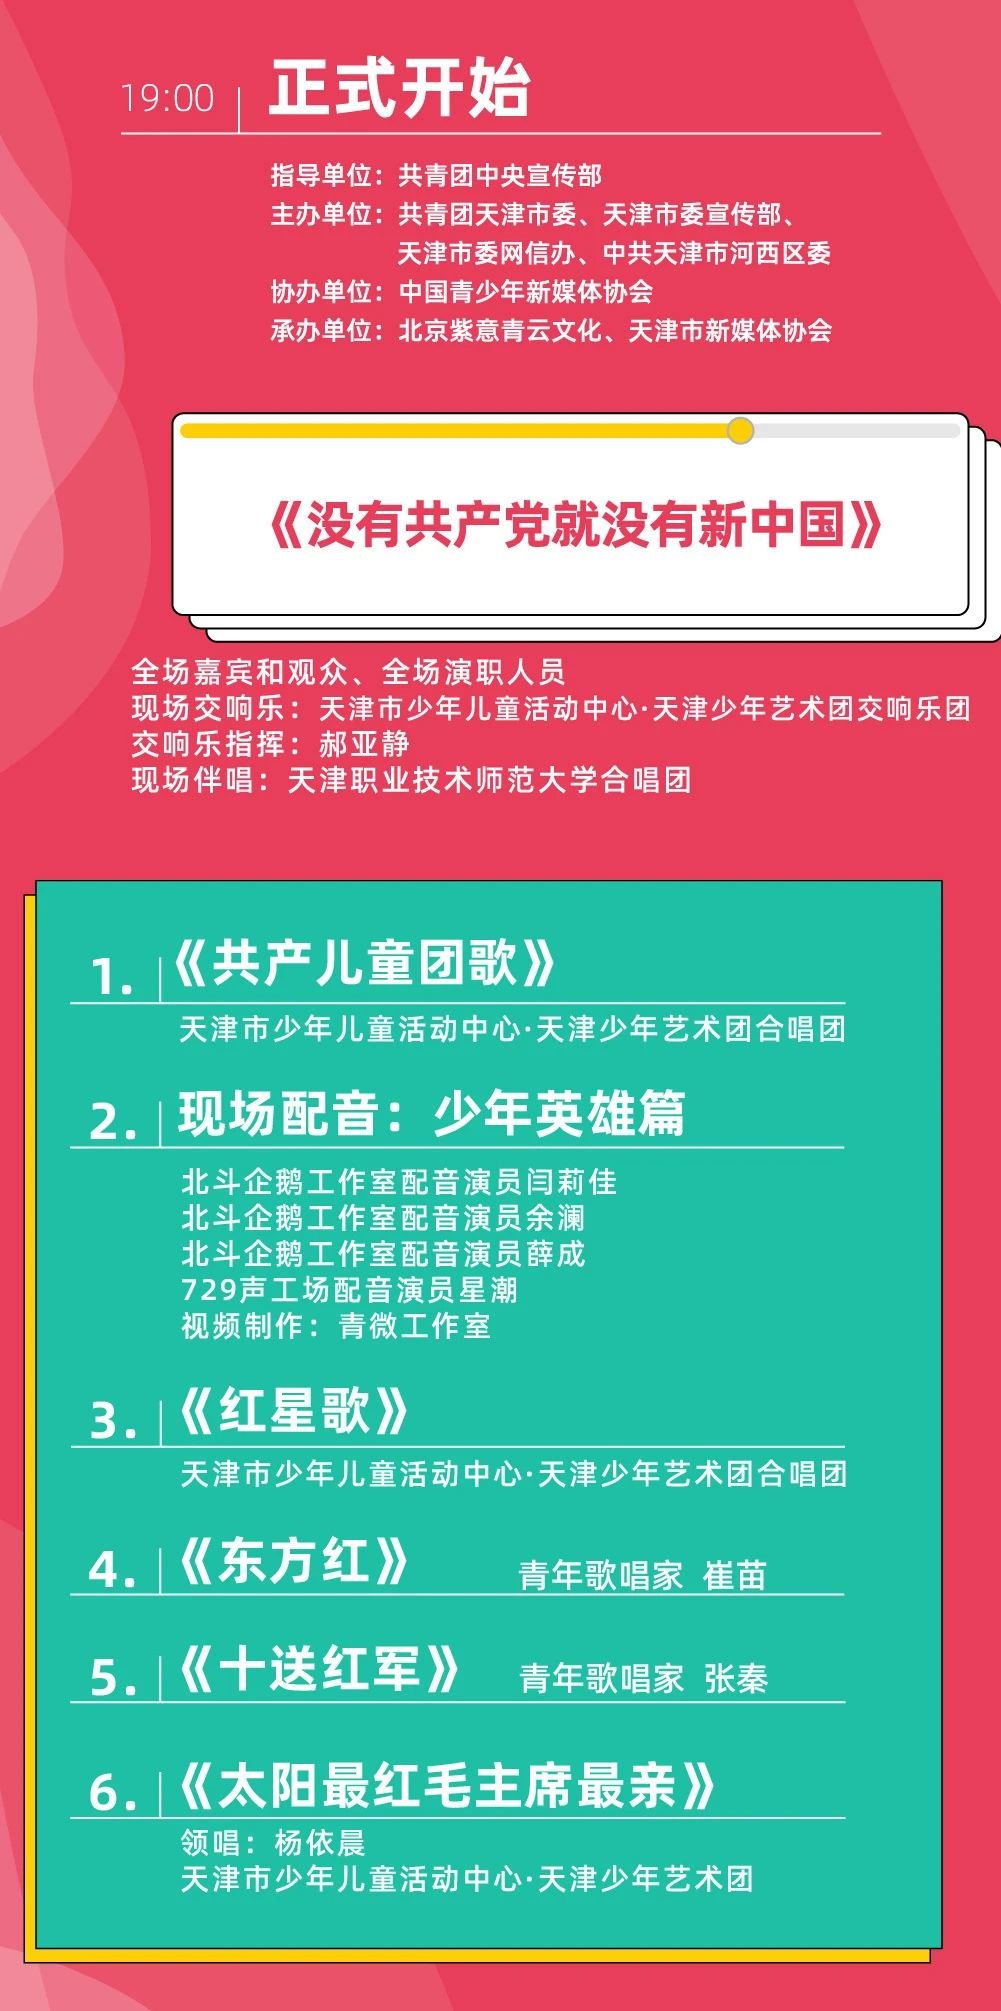 中国青年网络音乐节直播链接+节目单 中国青年网络音乐节2021